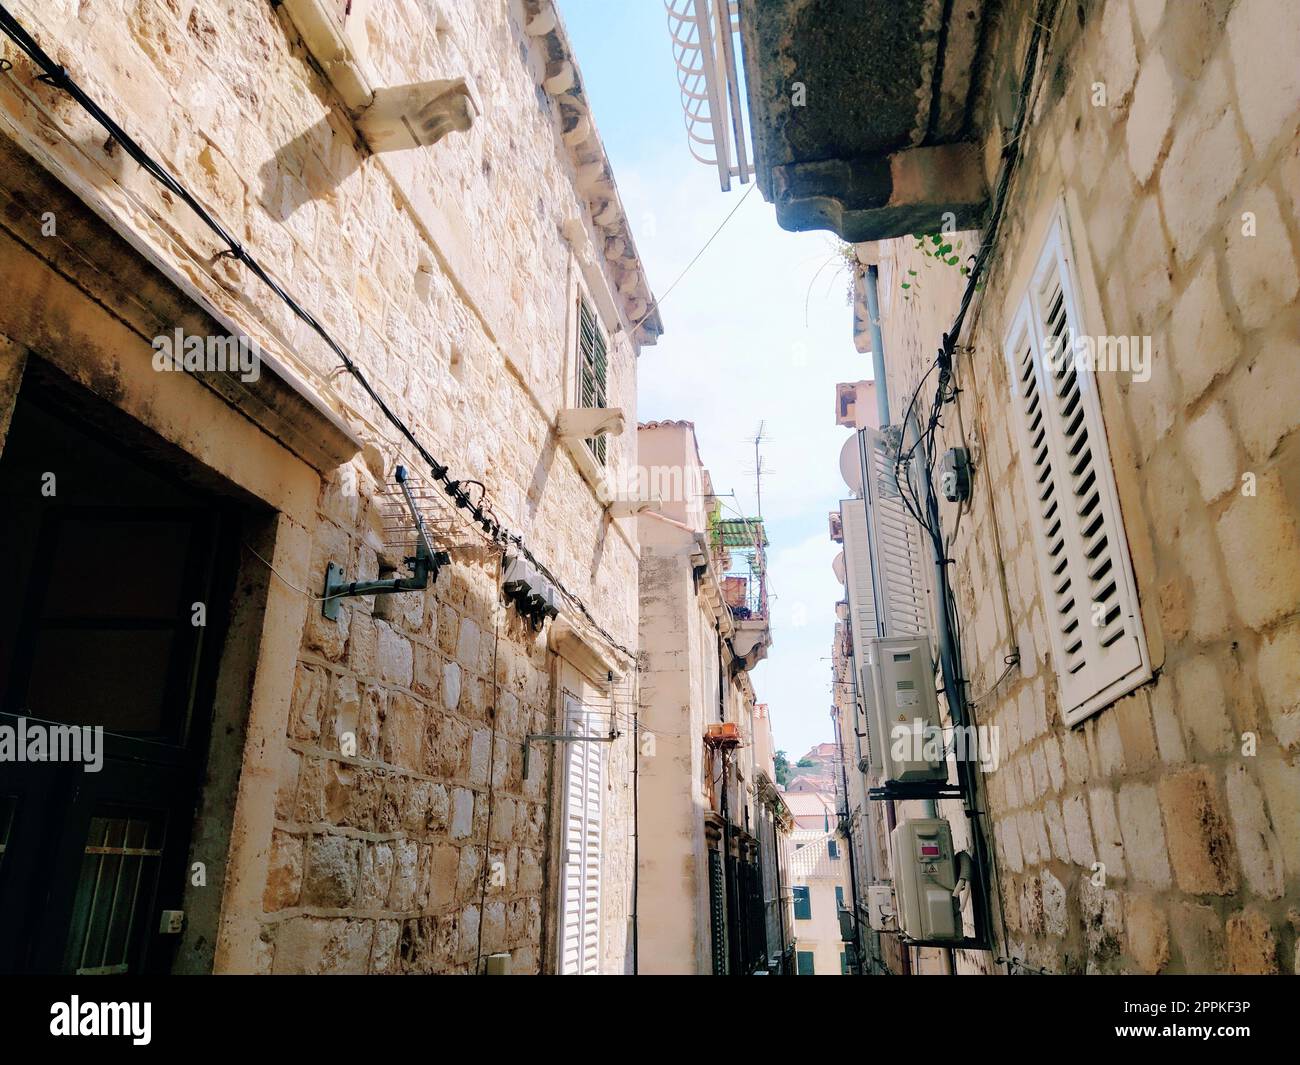 Dubrovnik, Croazia, 08.14. 2022. Stradine strette della città antica. Le facciate delle case sono fatte di marmo e pietra molto vicine l'una all'altra. Finestre con diaframmi. Turismo estivo in Adriatico. Foto Stock